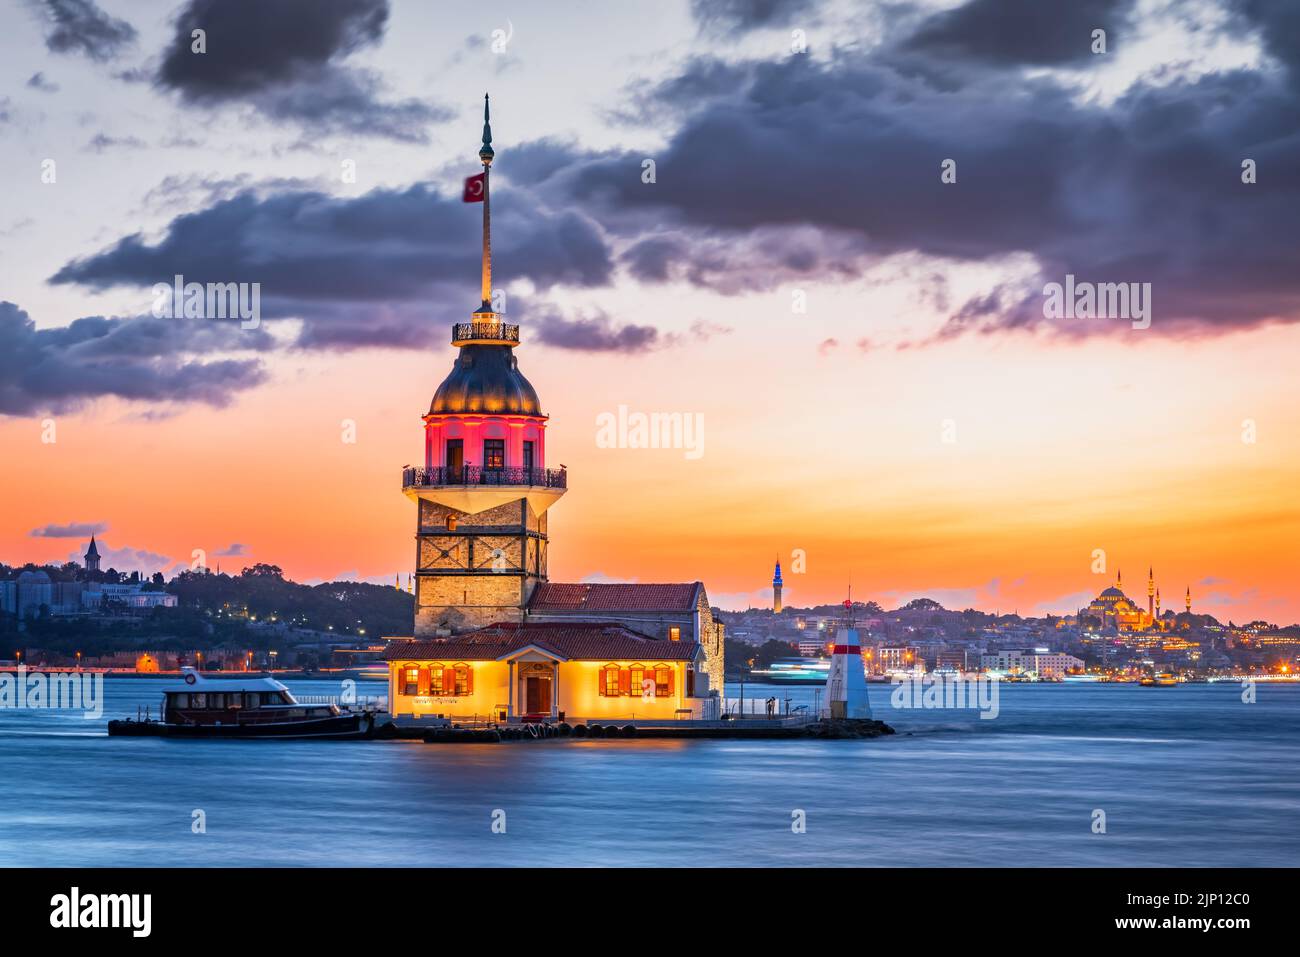 Istanbul, Turquie. Coucher de soleil pittoresque coloré sur le Bosphore avec le célèbre Kiz Kulesi, la Tour de la jeune fille. Paysage turc voyage fond. Banque D'Images